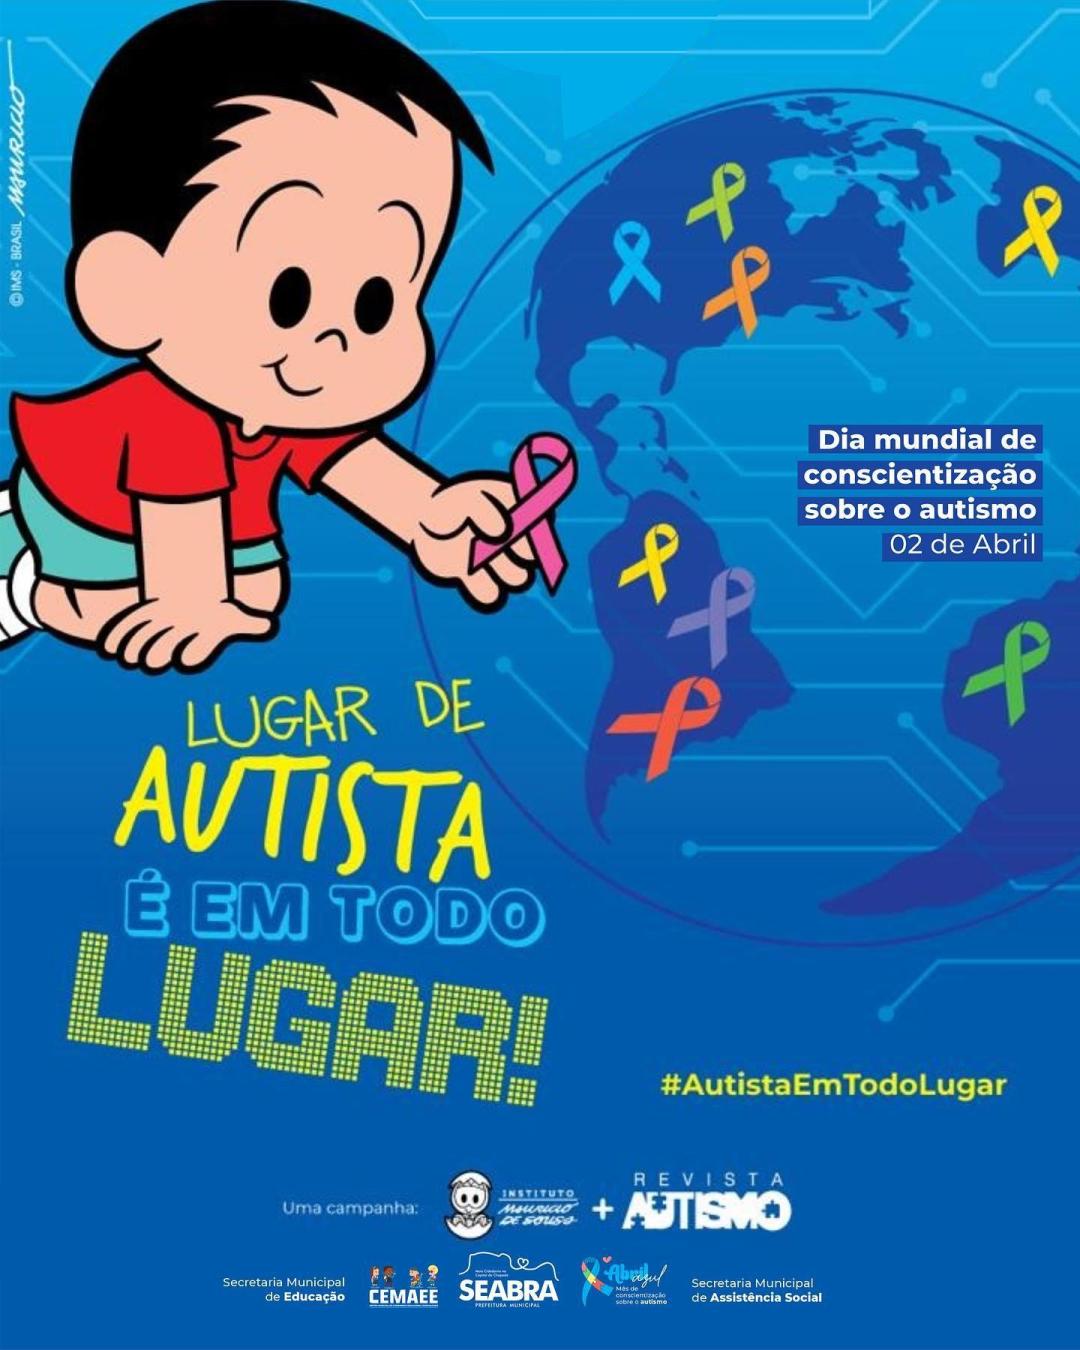 02/04 – Dia Mundial de Conscientização Sobre o Autismo